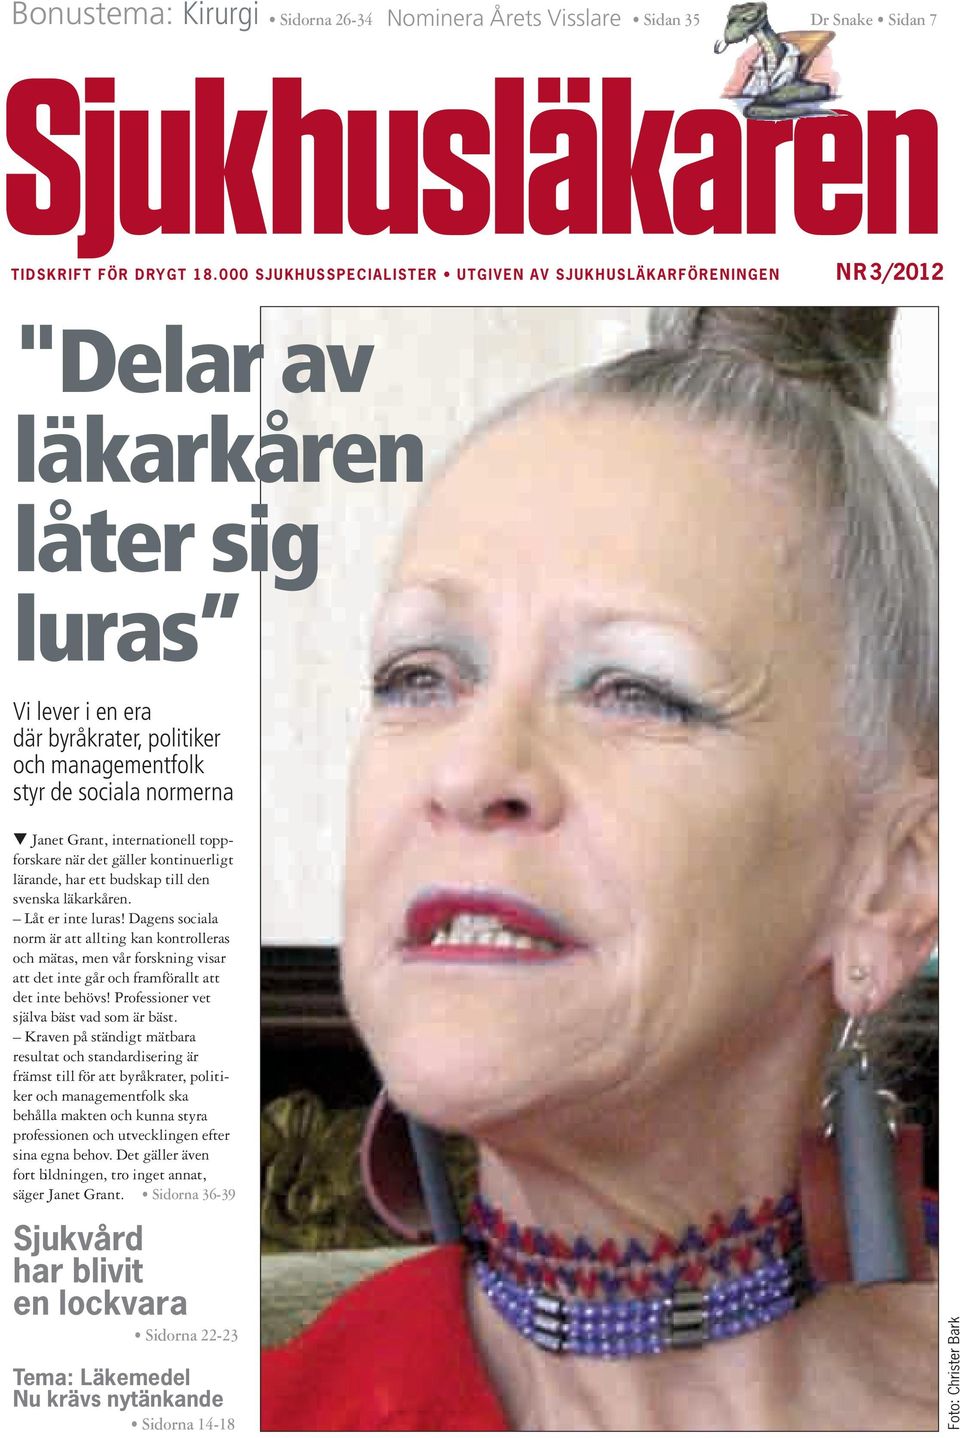 Janet Grant, internationell toppforskare när det gäller kontinuerligt lärande, har ett budskap till den svenska läkarkåren. Låt er inte luras!